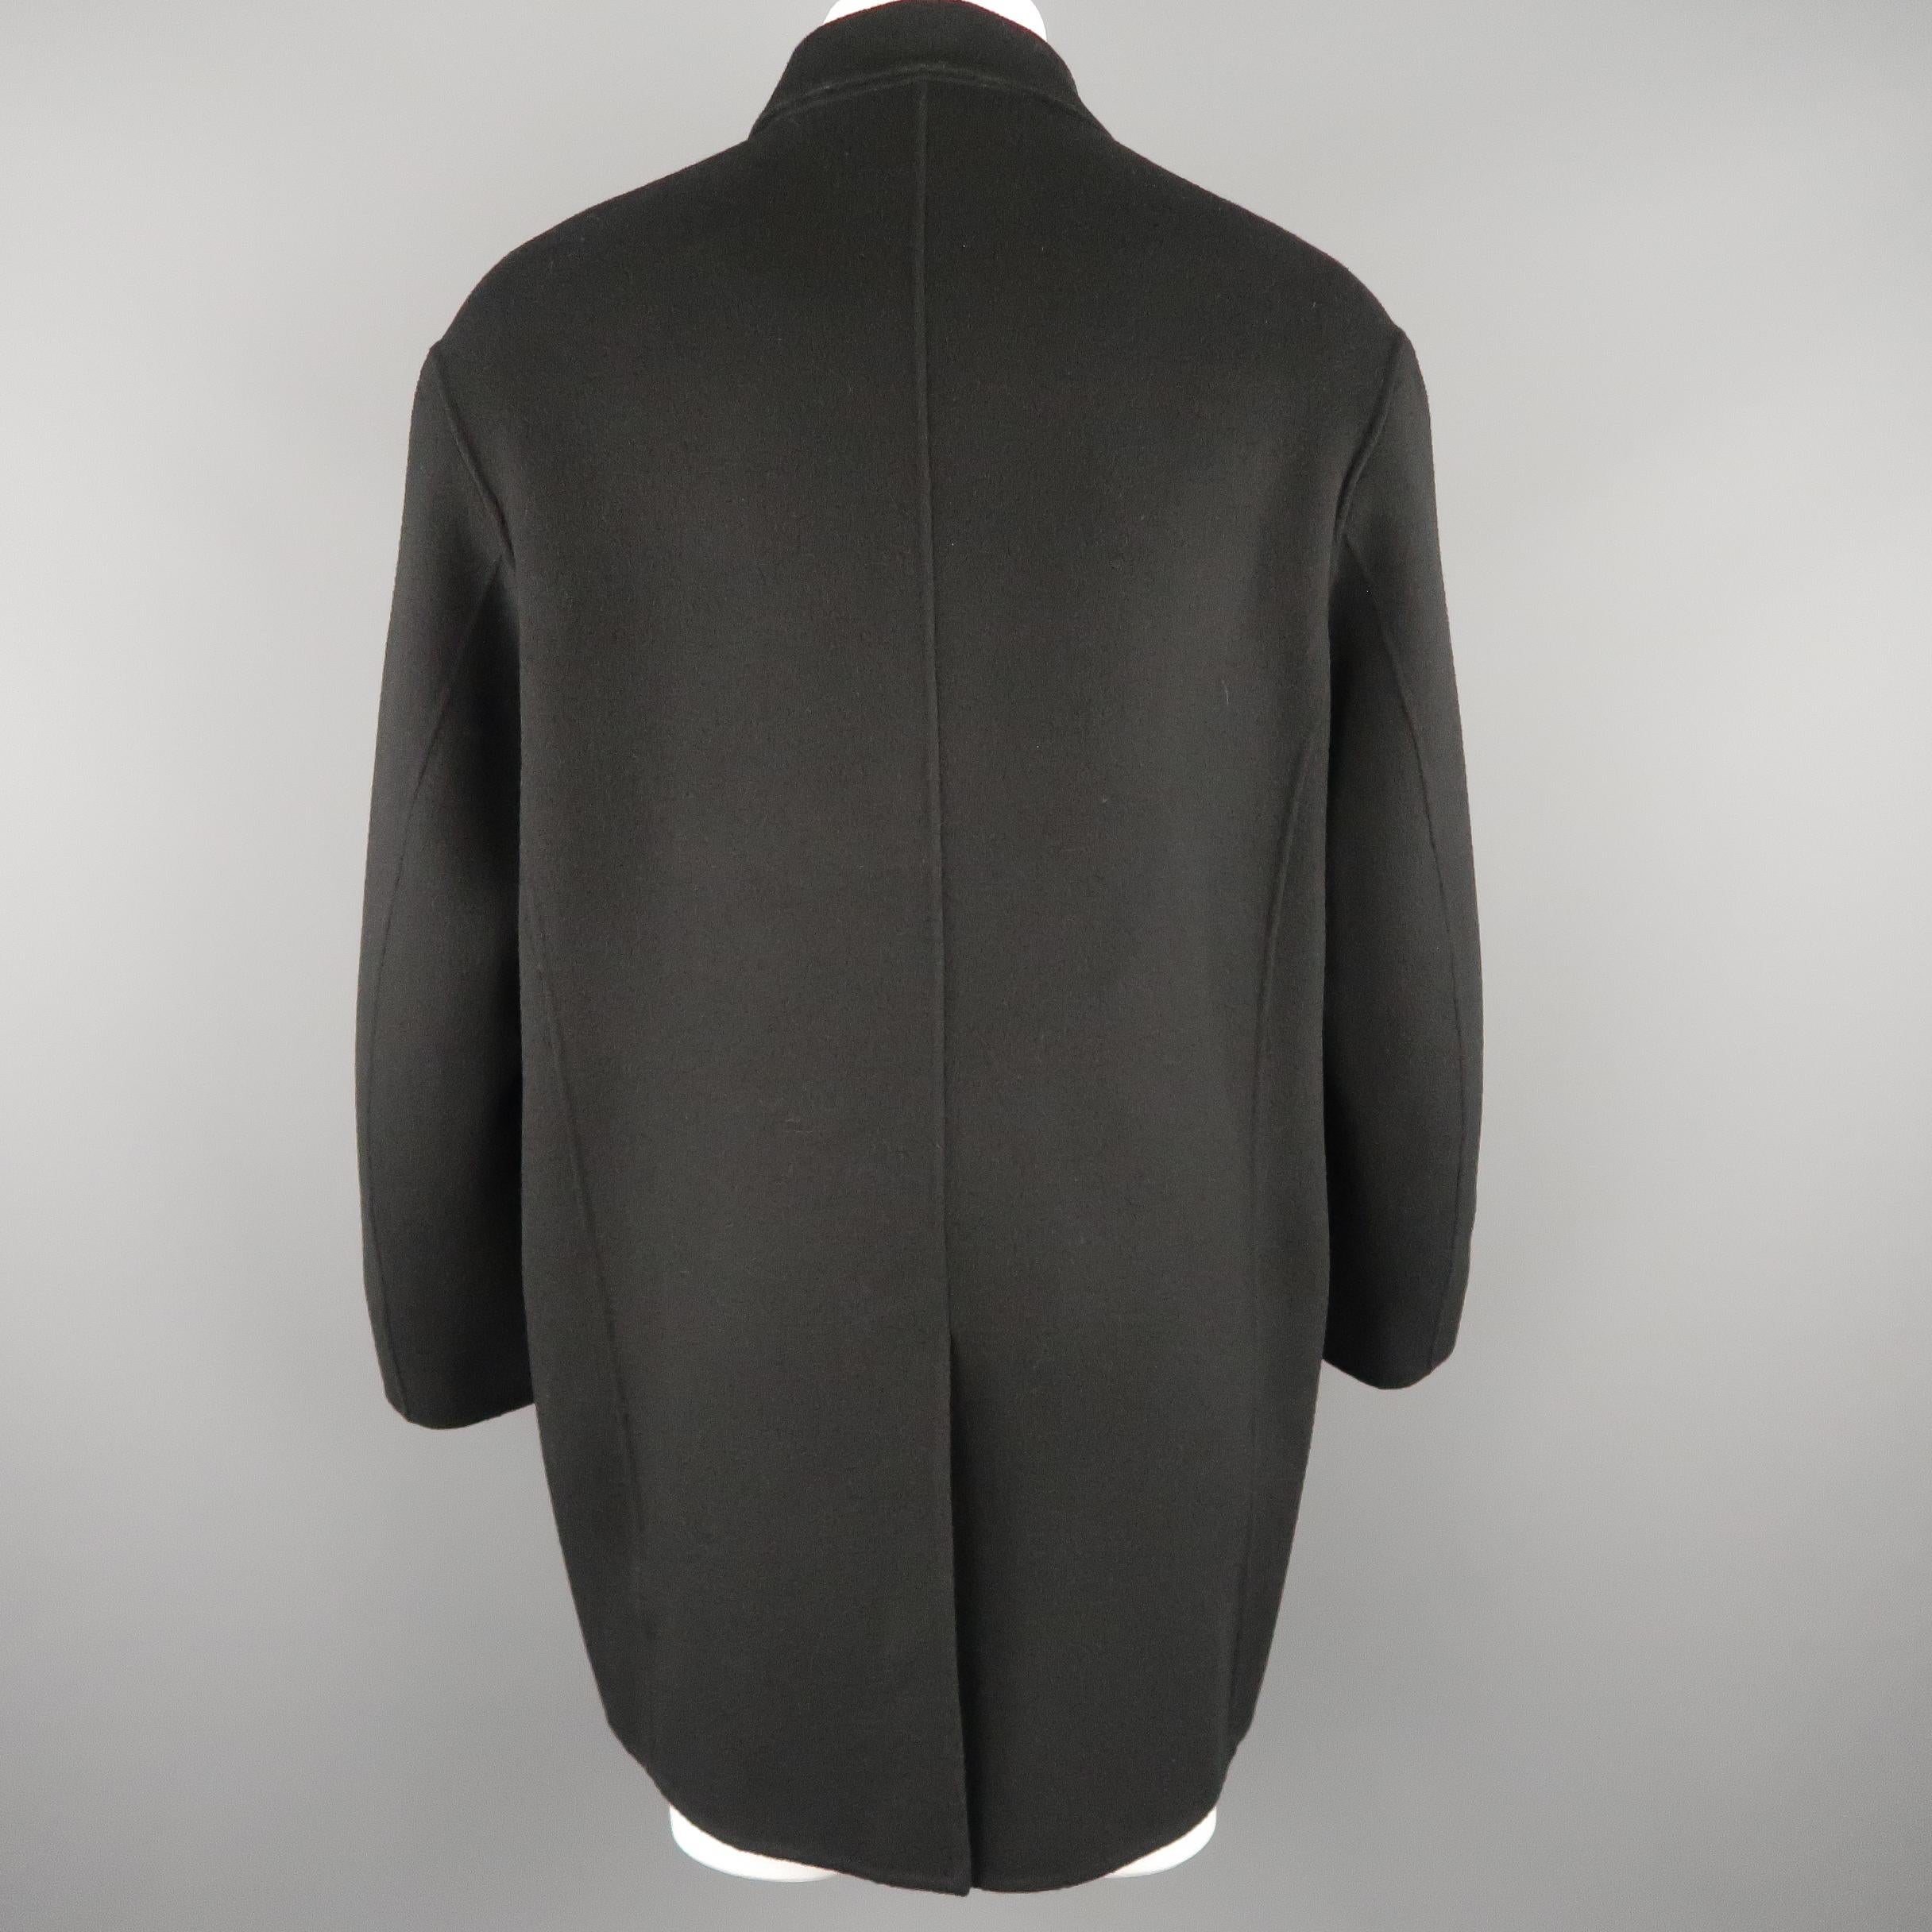 Men's DONNA KARAN M Black Solid Wool / Nylon Hidden Placket Car Coat 2